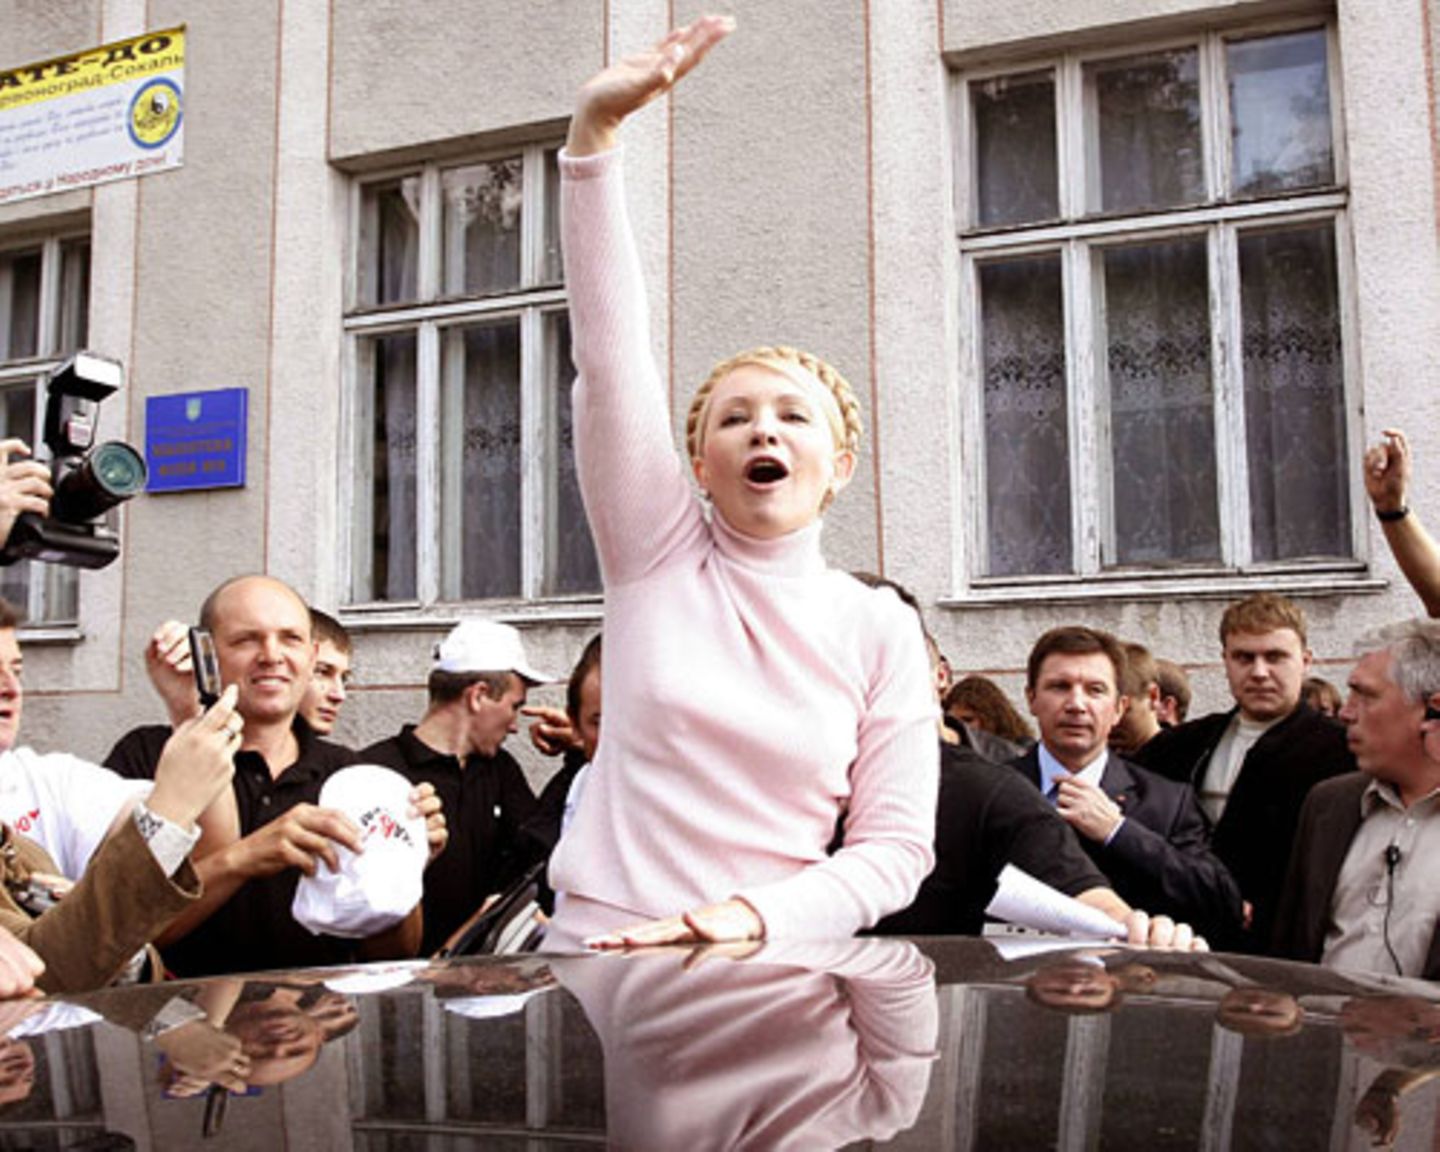 2007 wurde Timoschenko – hier bei einer Wahlveranstaltung - erneut zur Premierministerin gewählt. Ihre zweite Amtszeit war geprägt von Querelen mit Koalitionspartnern und politischen Alleingängen.